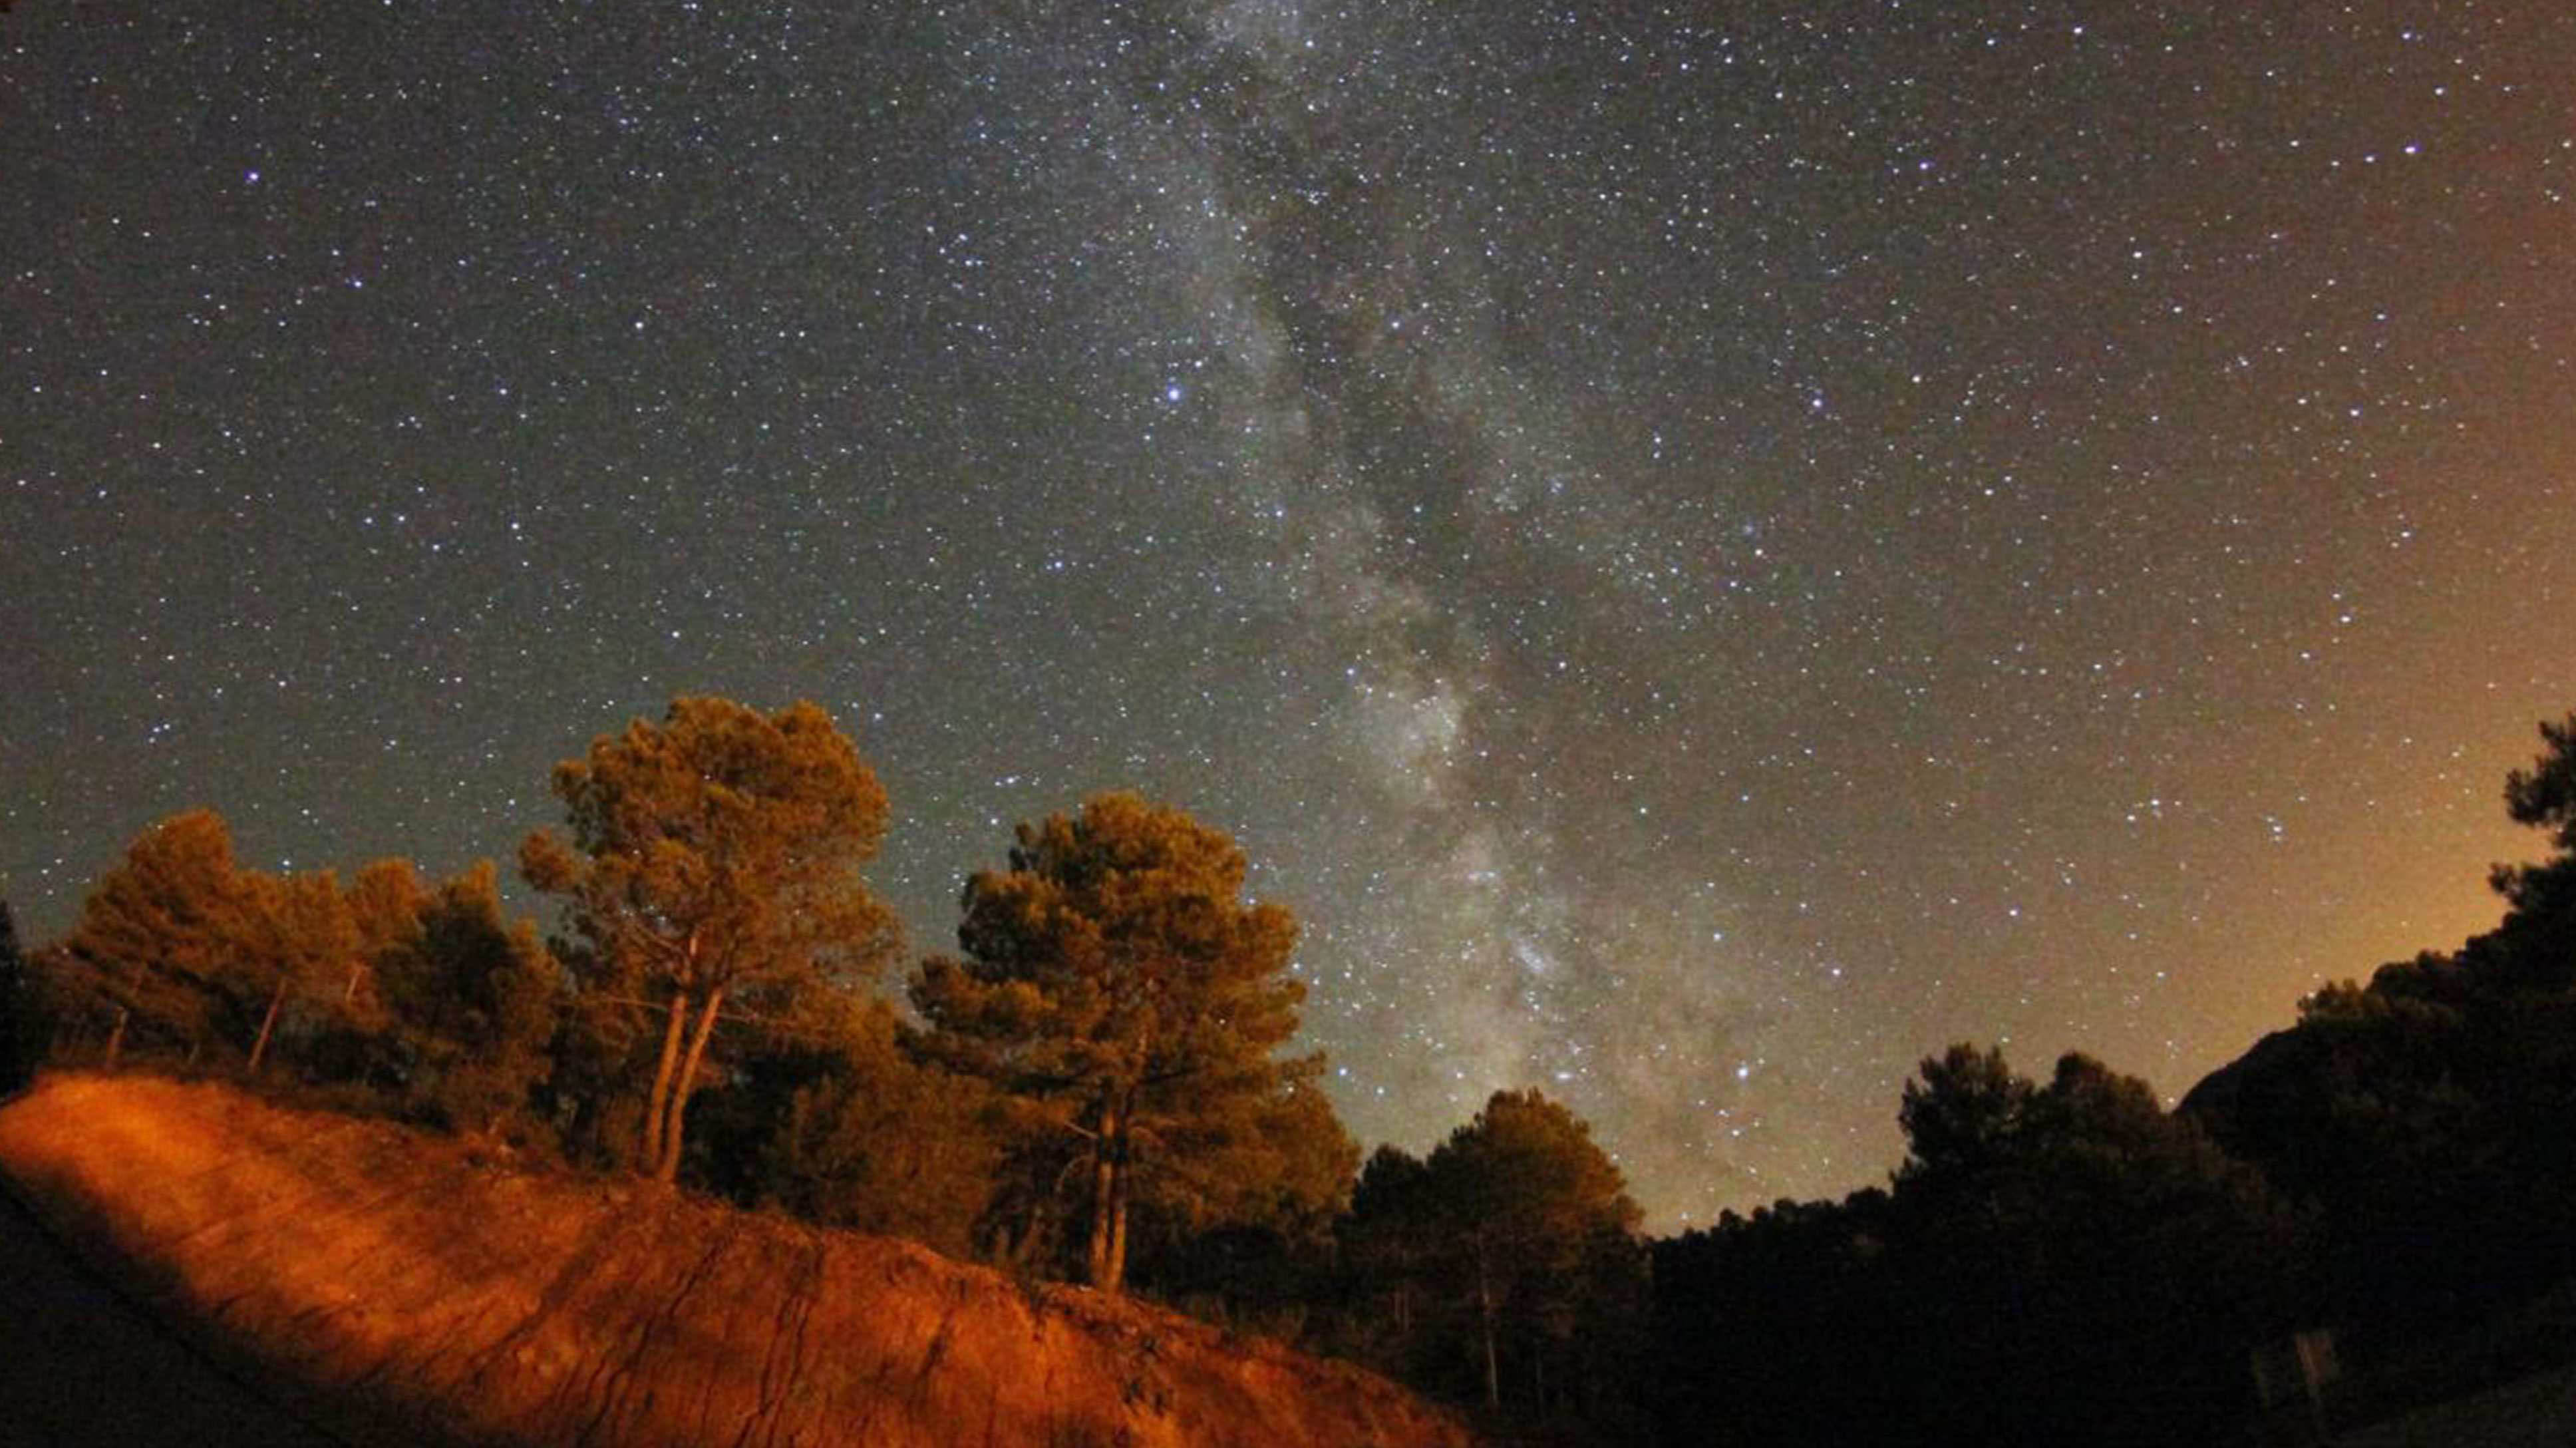 Mañana se celebra en el Valle de Alcudia una nueva observación nocturna incluida en el ‘Verano Astronómico’ de Castilla-La Mancha 